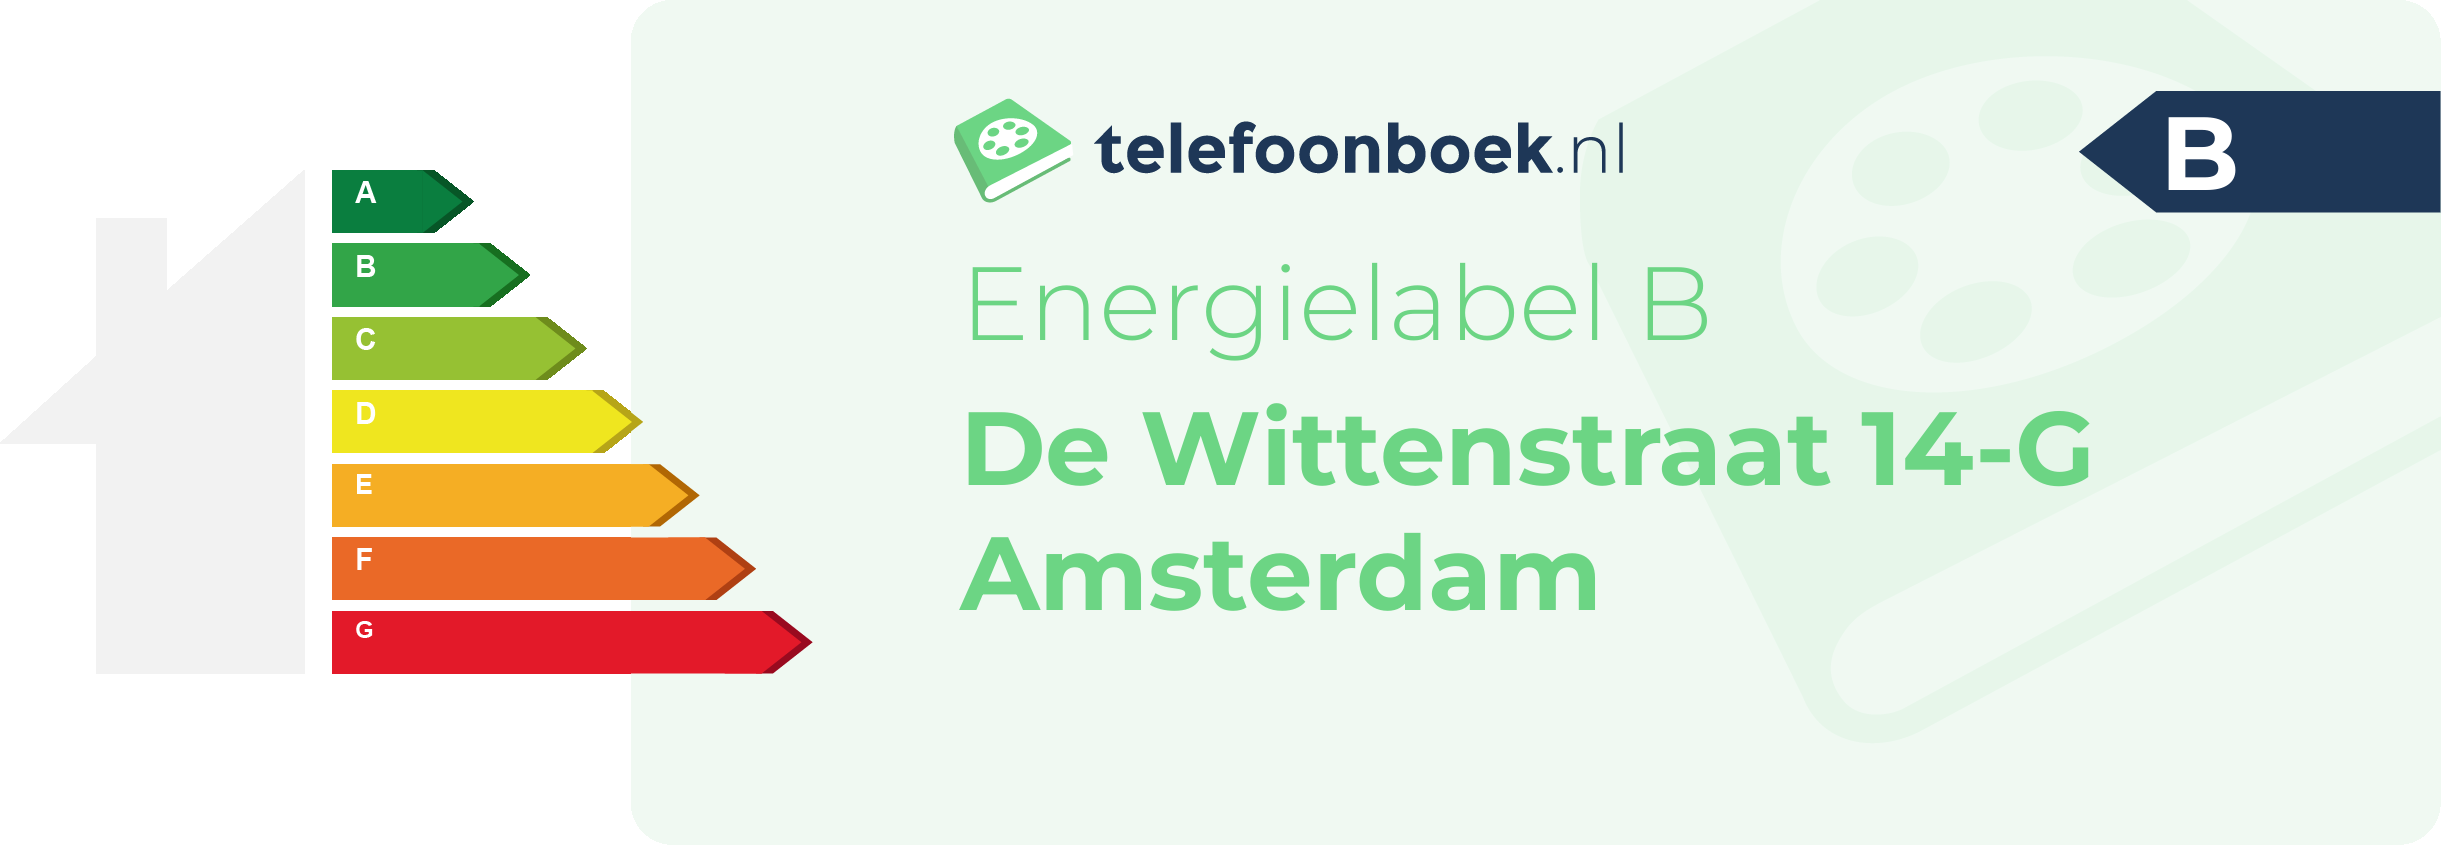 Energielabel De Wittenstraat 14-G Amsterdam